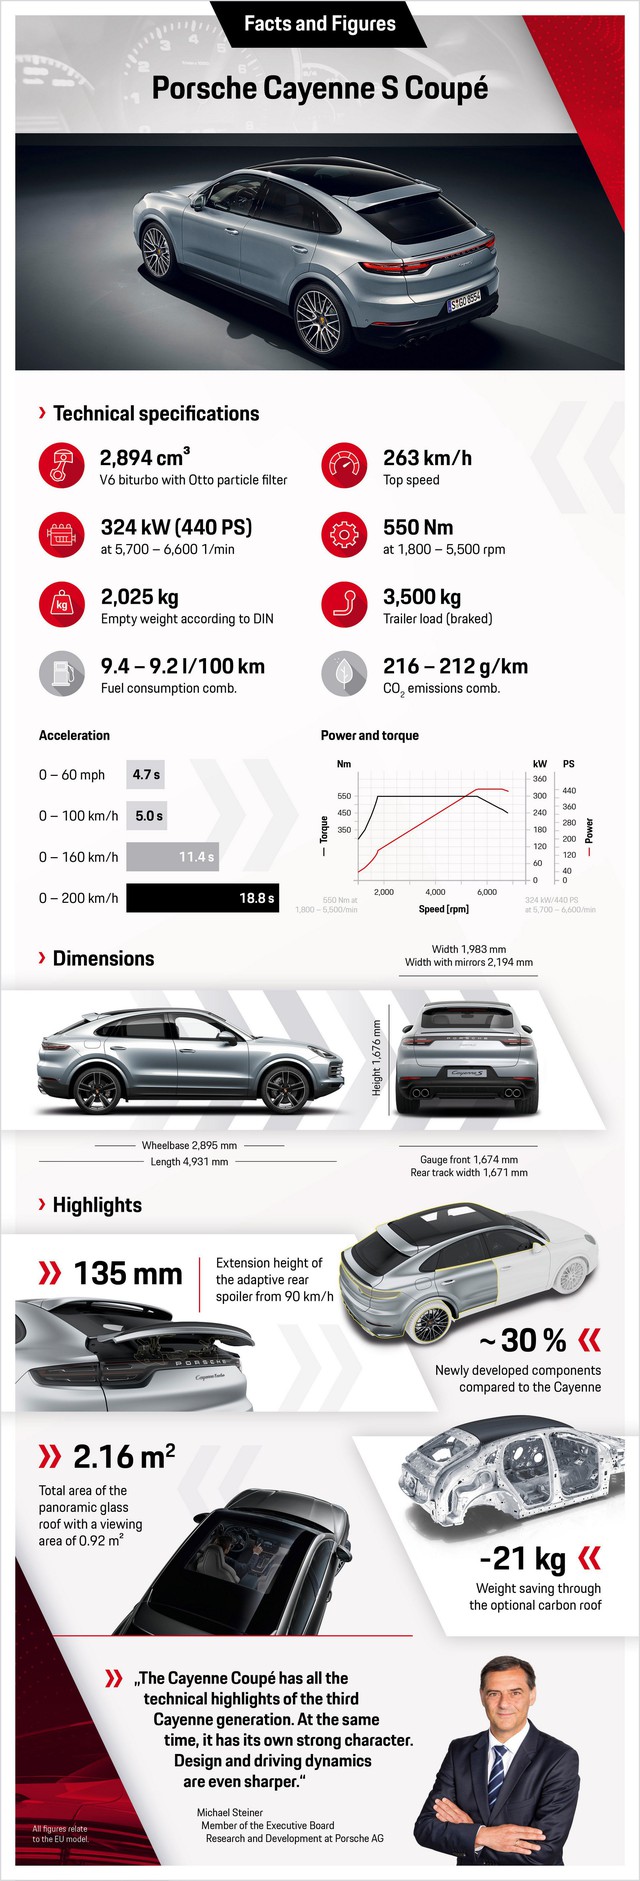 Porsche Cayenne S Coupe 2020 ra mắt ngay quý III, dùng động cơ V6 434 mã lực - Ảnh 4.